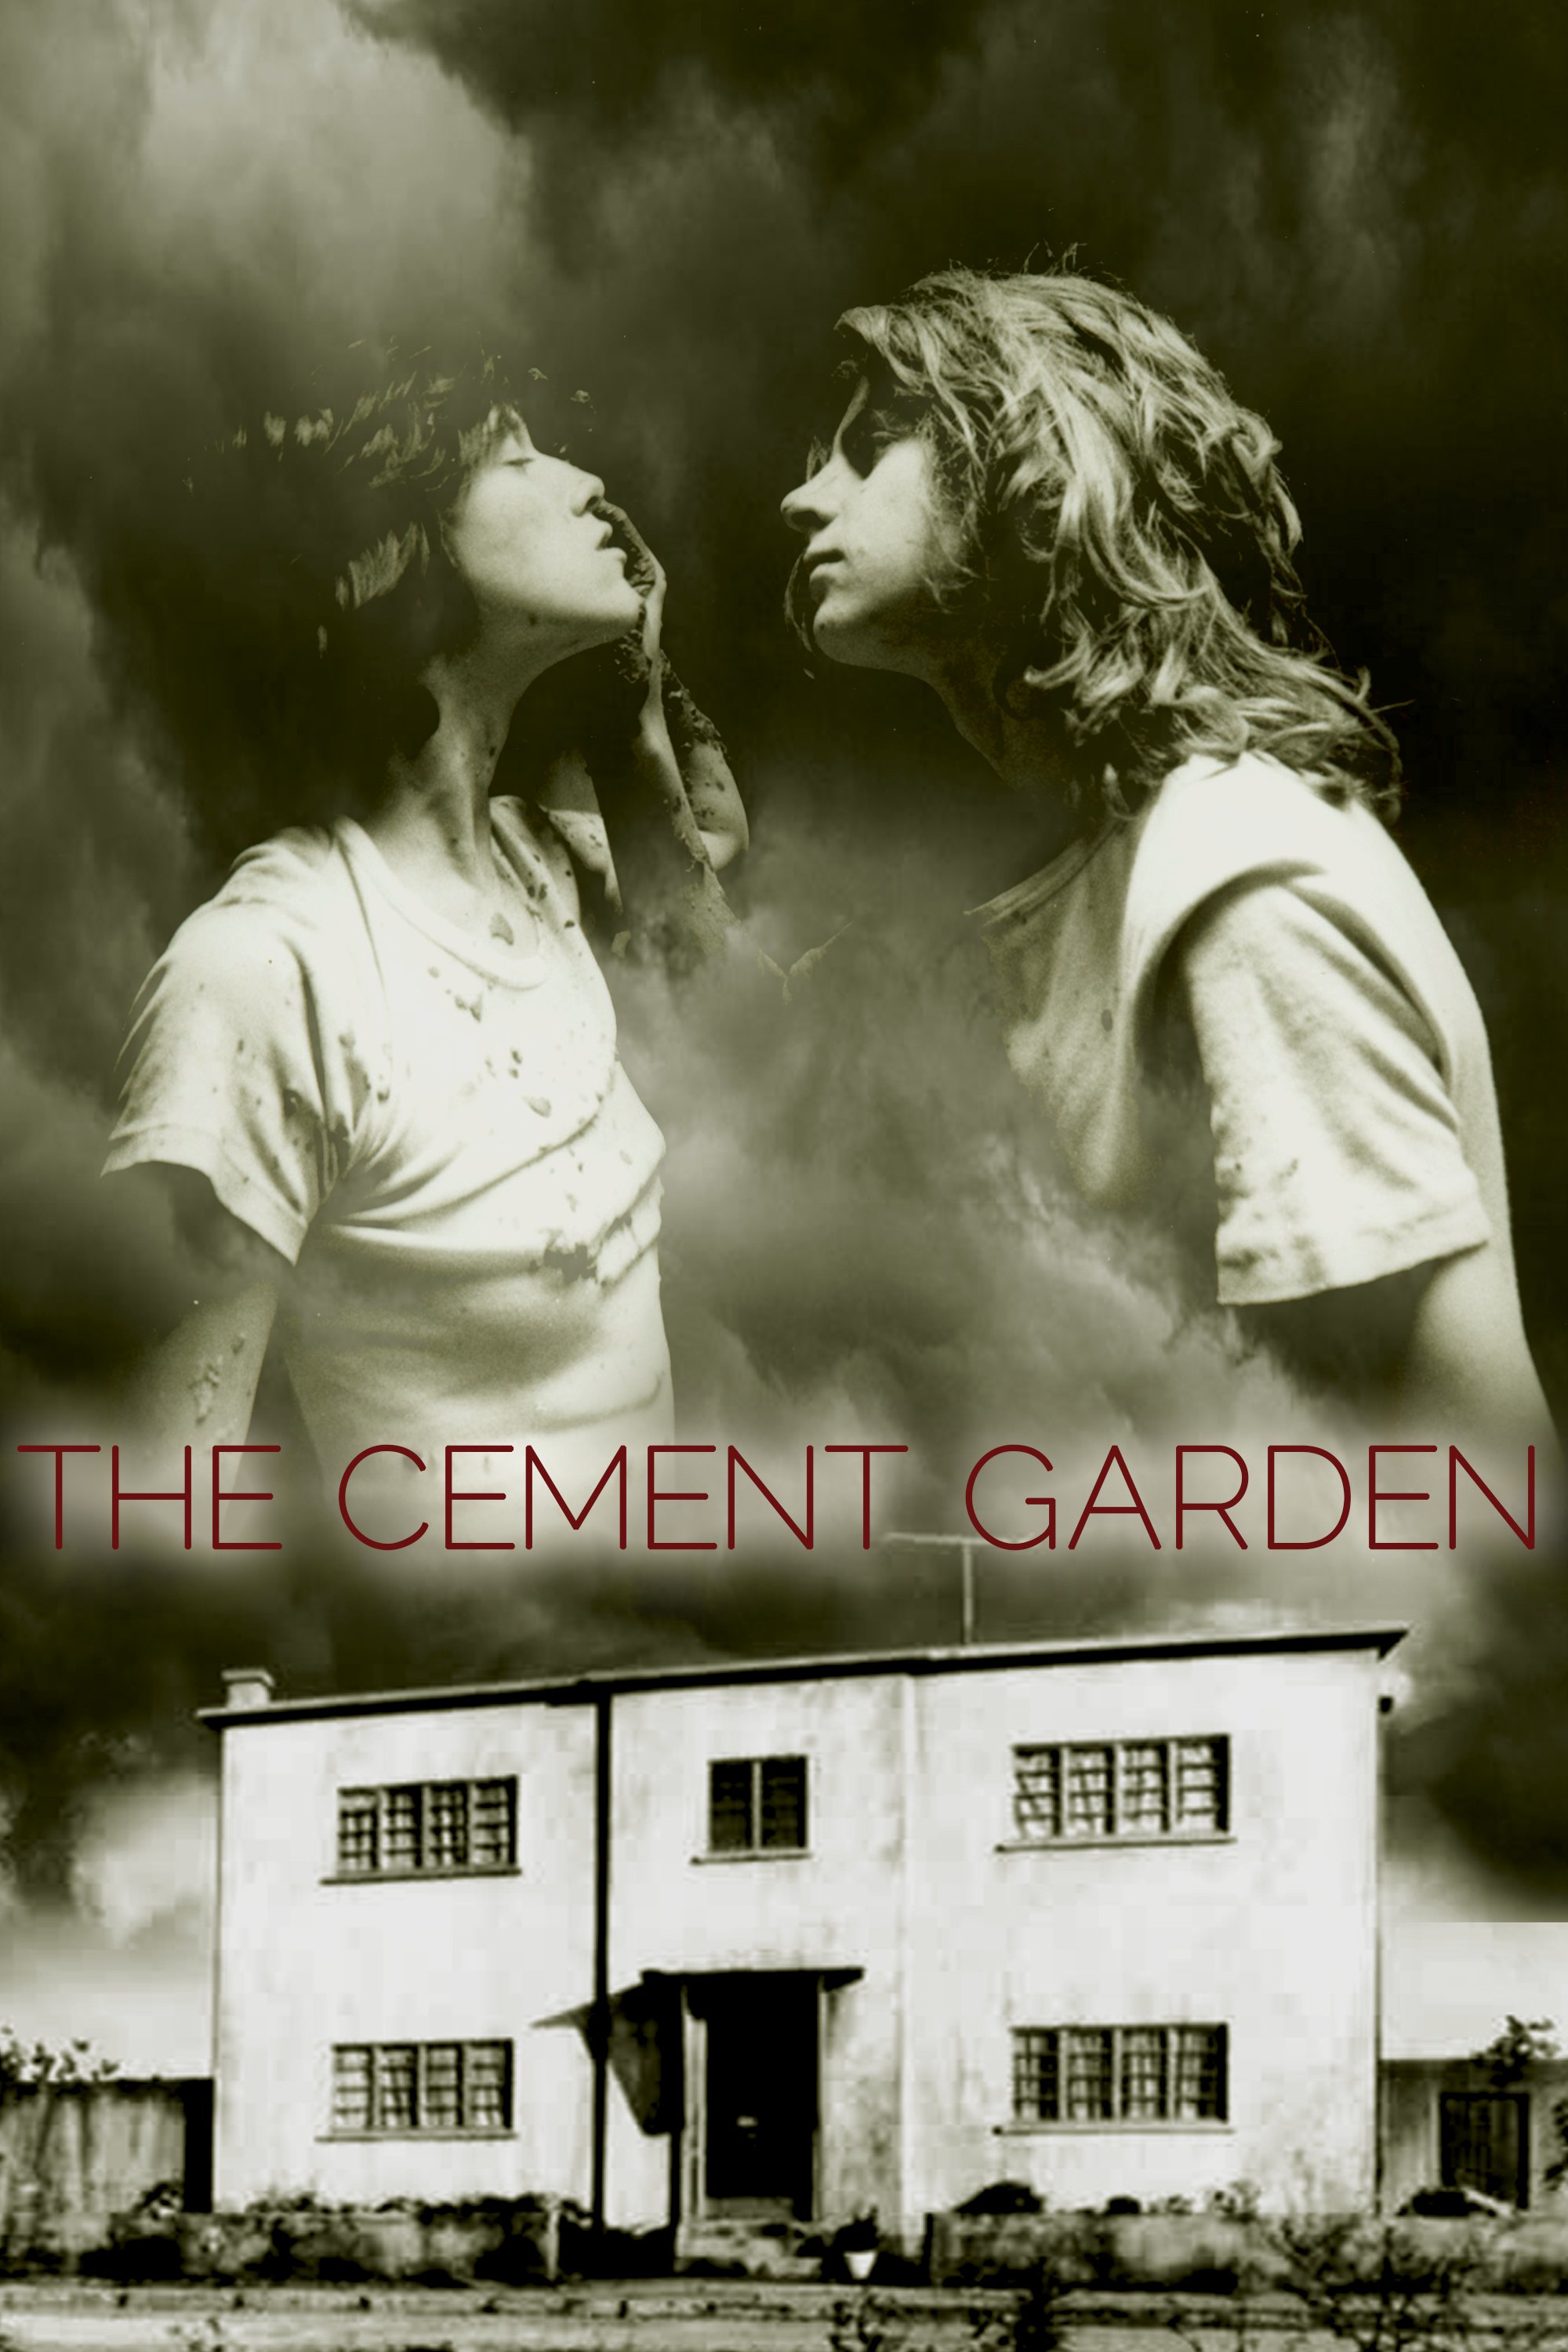 Cement Garden